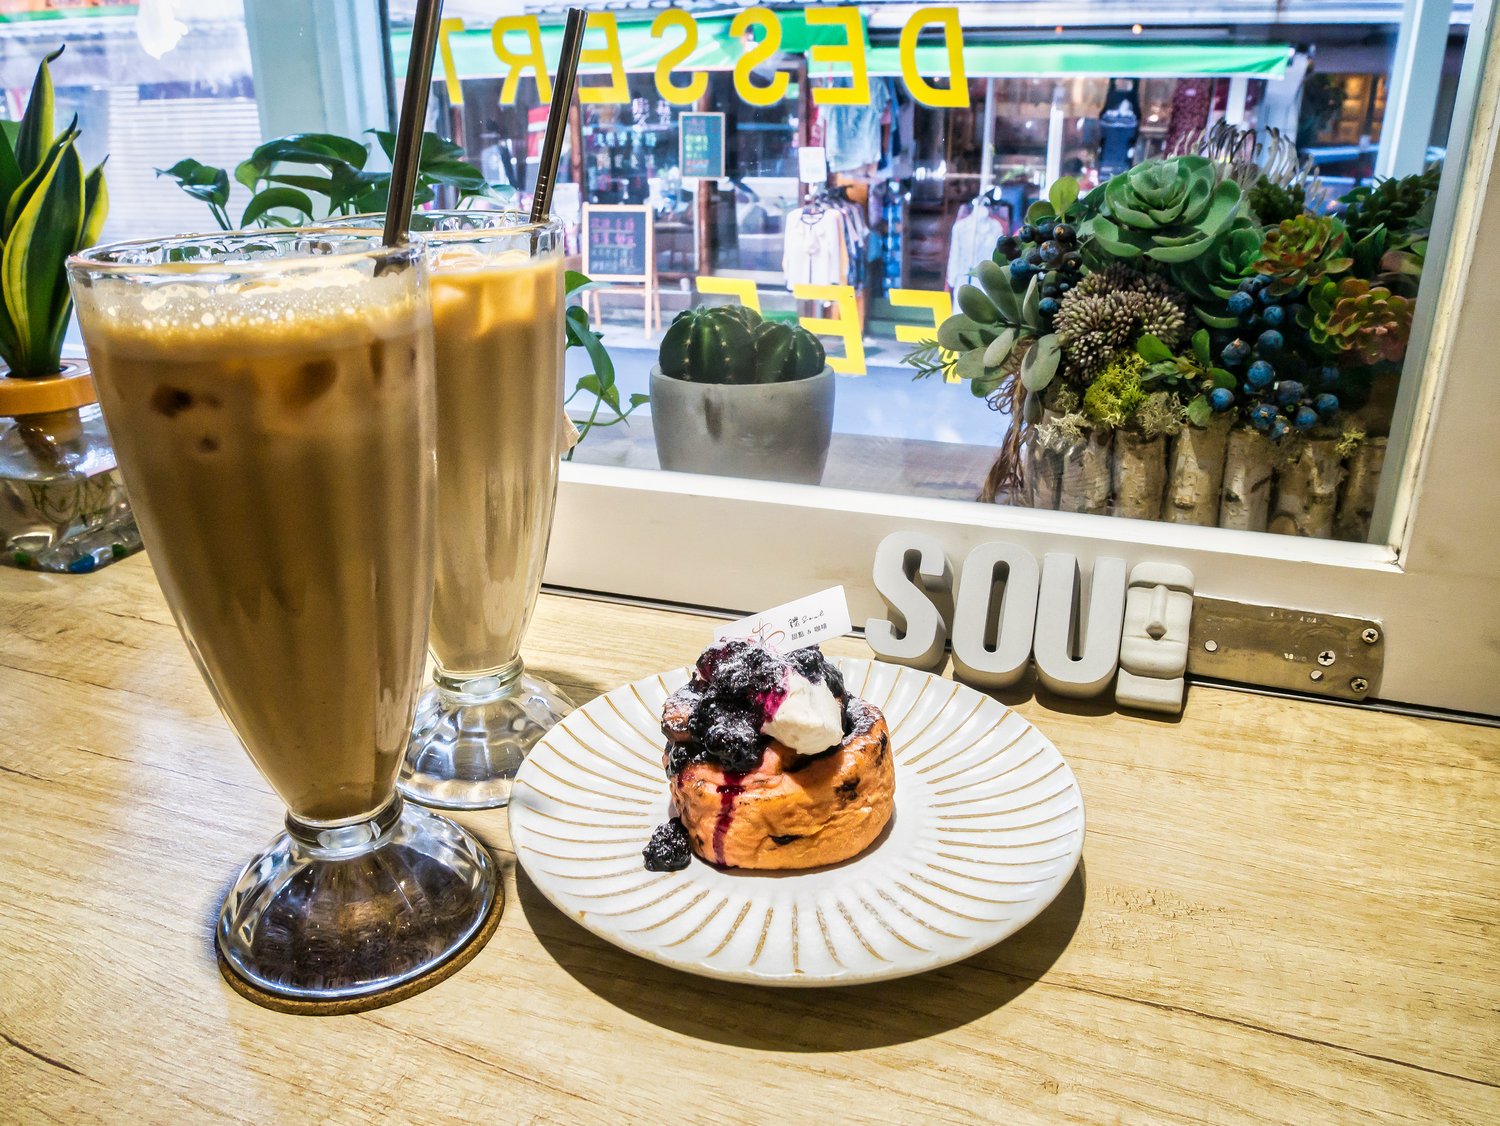 松山區咖啡廳 鑠咖啡甜點專賣店 小巨蛋附近可以體驗精品咖啡